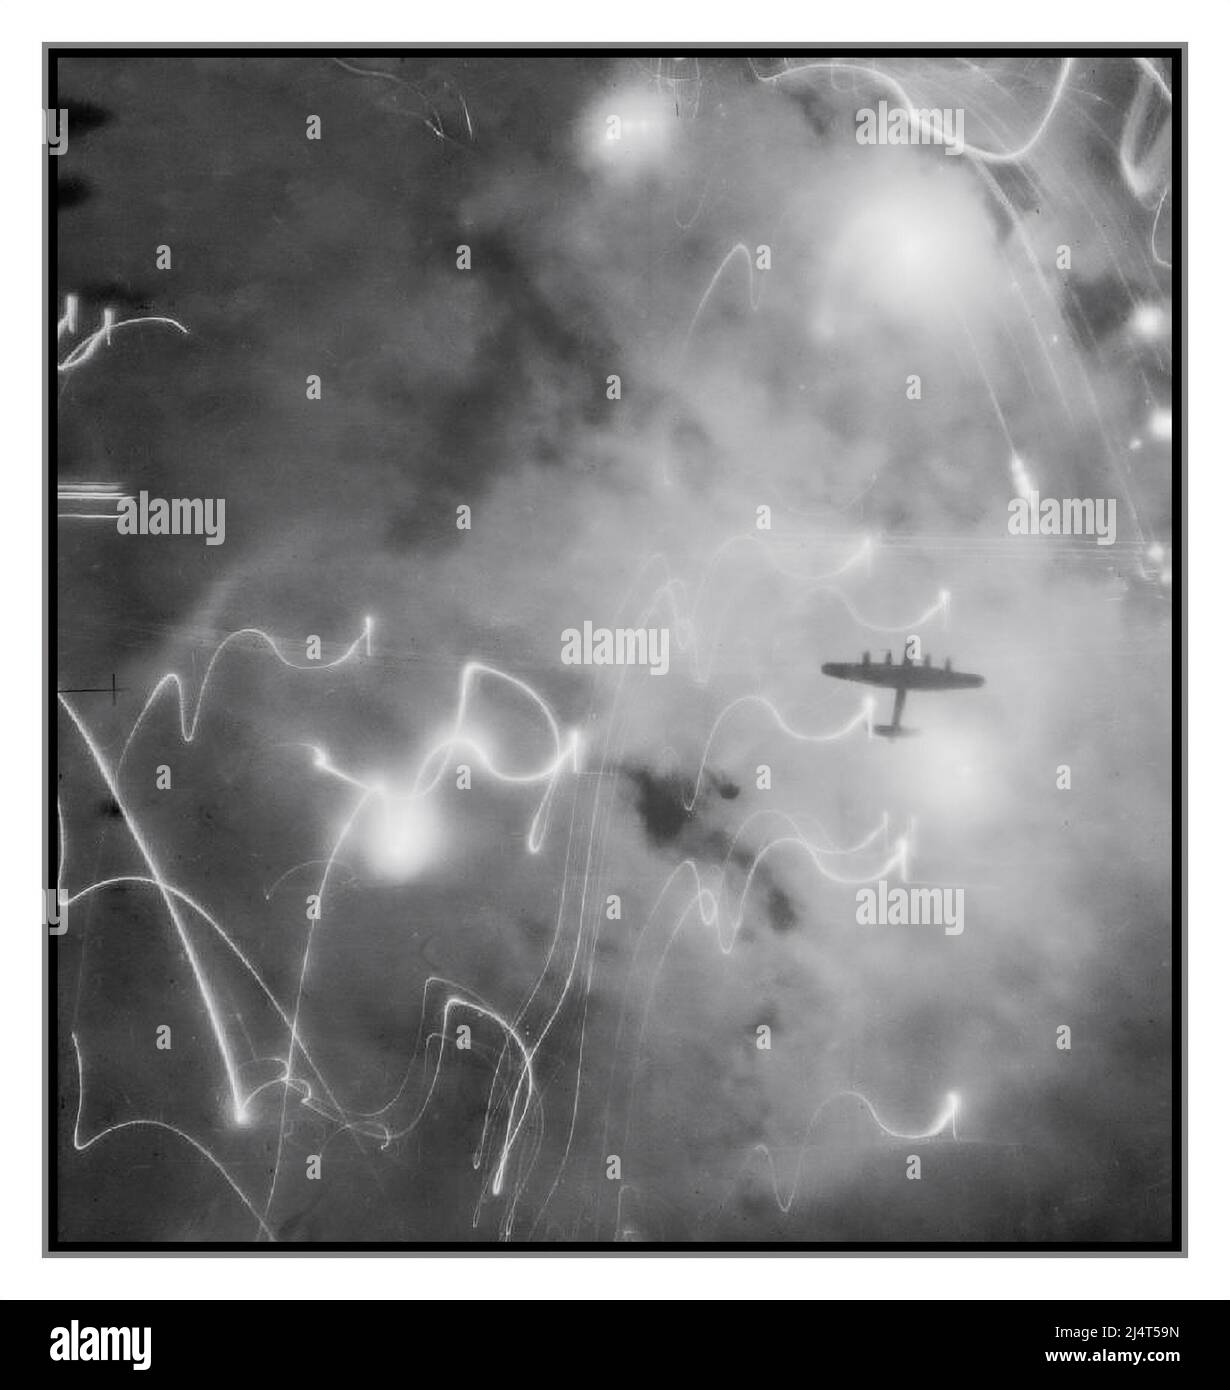 NUIT DES BOMBARDEMENTS WW2 HAMBOURG image de reconnaissance remarquable illustrant le chaos des fusées éclairantes et des tirs ennemis avec les bombardements alliés au-dessus de l'Allemagne nazie un Avro Lancaster du Commandement bombardier n° 1 du Groupe, silhoueté contre les fusées, la fumée et les explosions pendant l'attaque sur Hambourg, Allemagne, par des avions n° 1, 5 et 8 groupes dans la nuit du 30/31 janvier 1943. Ce raid a été la première fois où H2S radars centimétriques ont été utilisés par l'avion Pathfinder pour naviguer dans la course de bombardement. Ne nous oublions pas le courage et le sacrifice des équipes du commandement britannique de l'bombardier de la RAF Banque D'Images